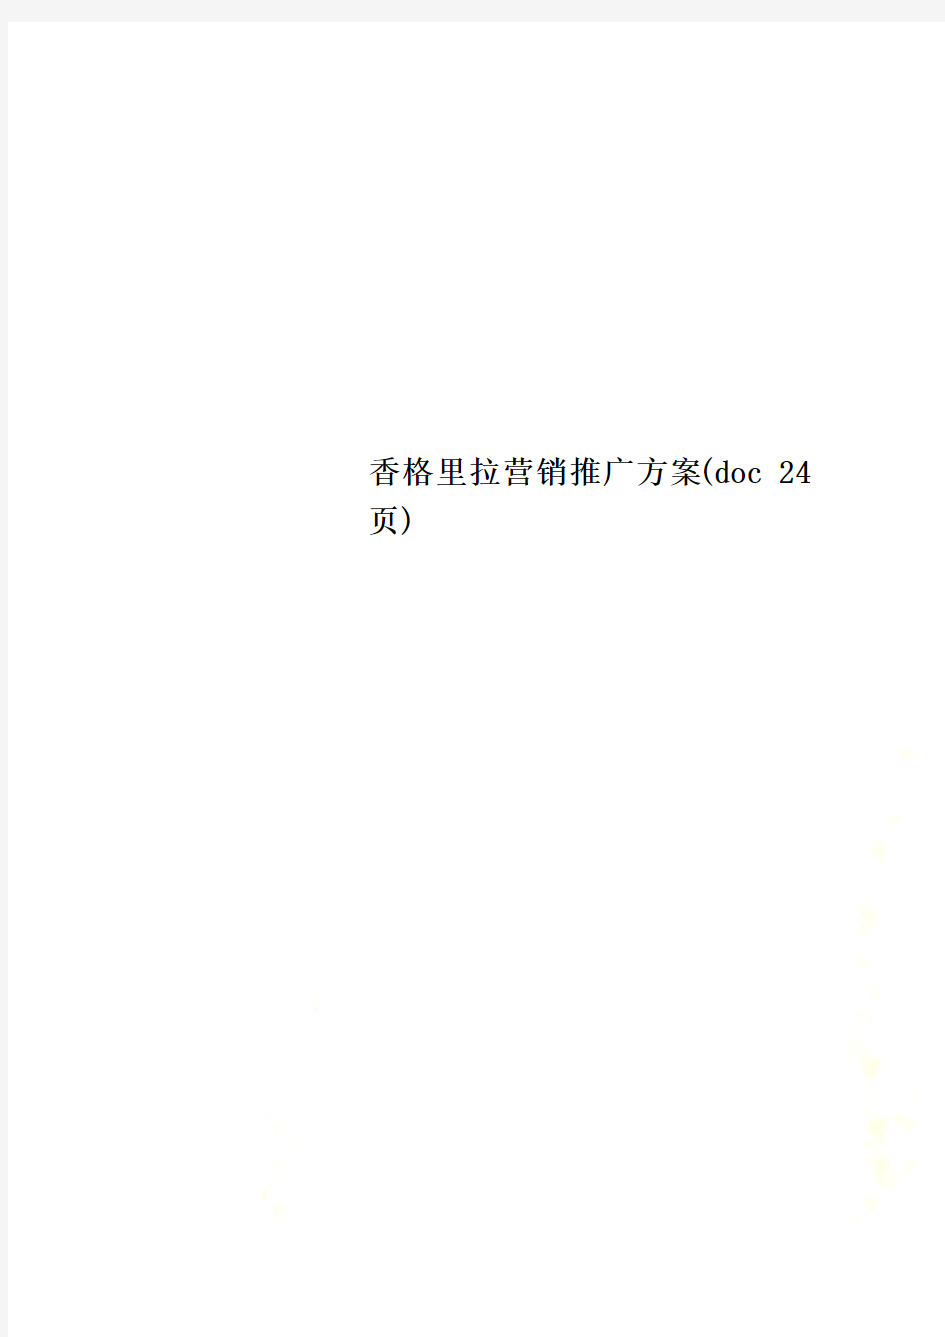 香格里拉营销推广方案(doc 24页)